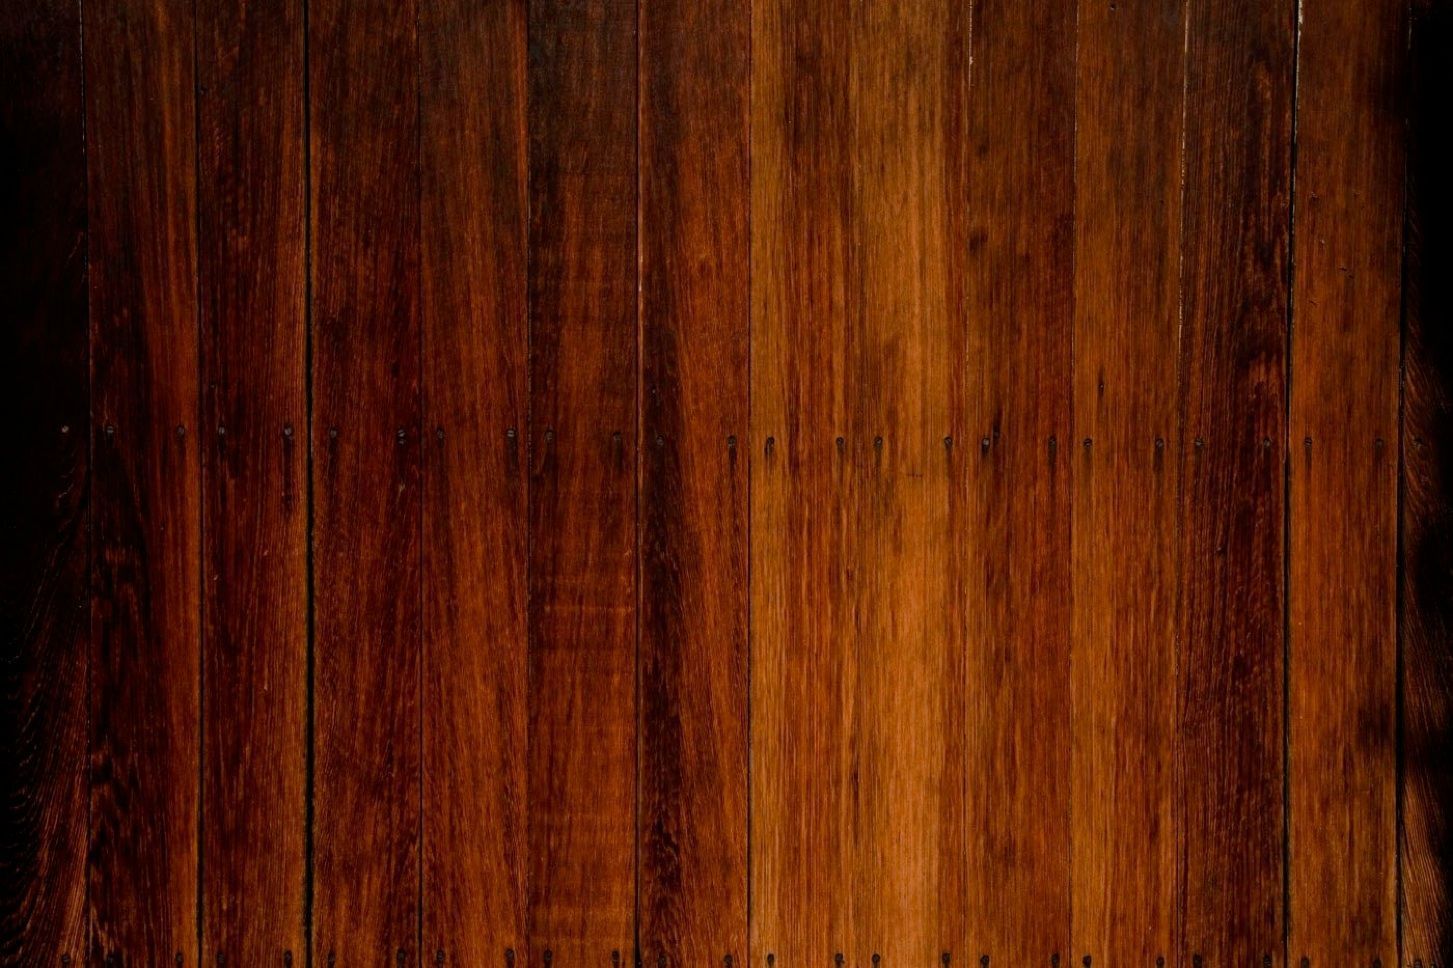 Hardwood background hdfree download dark wood background hd135776